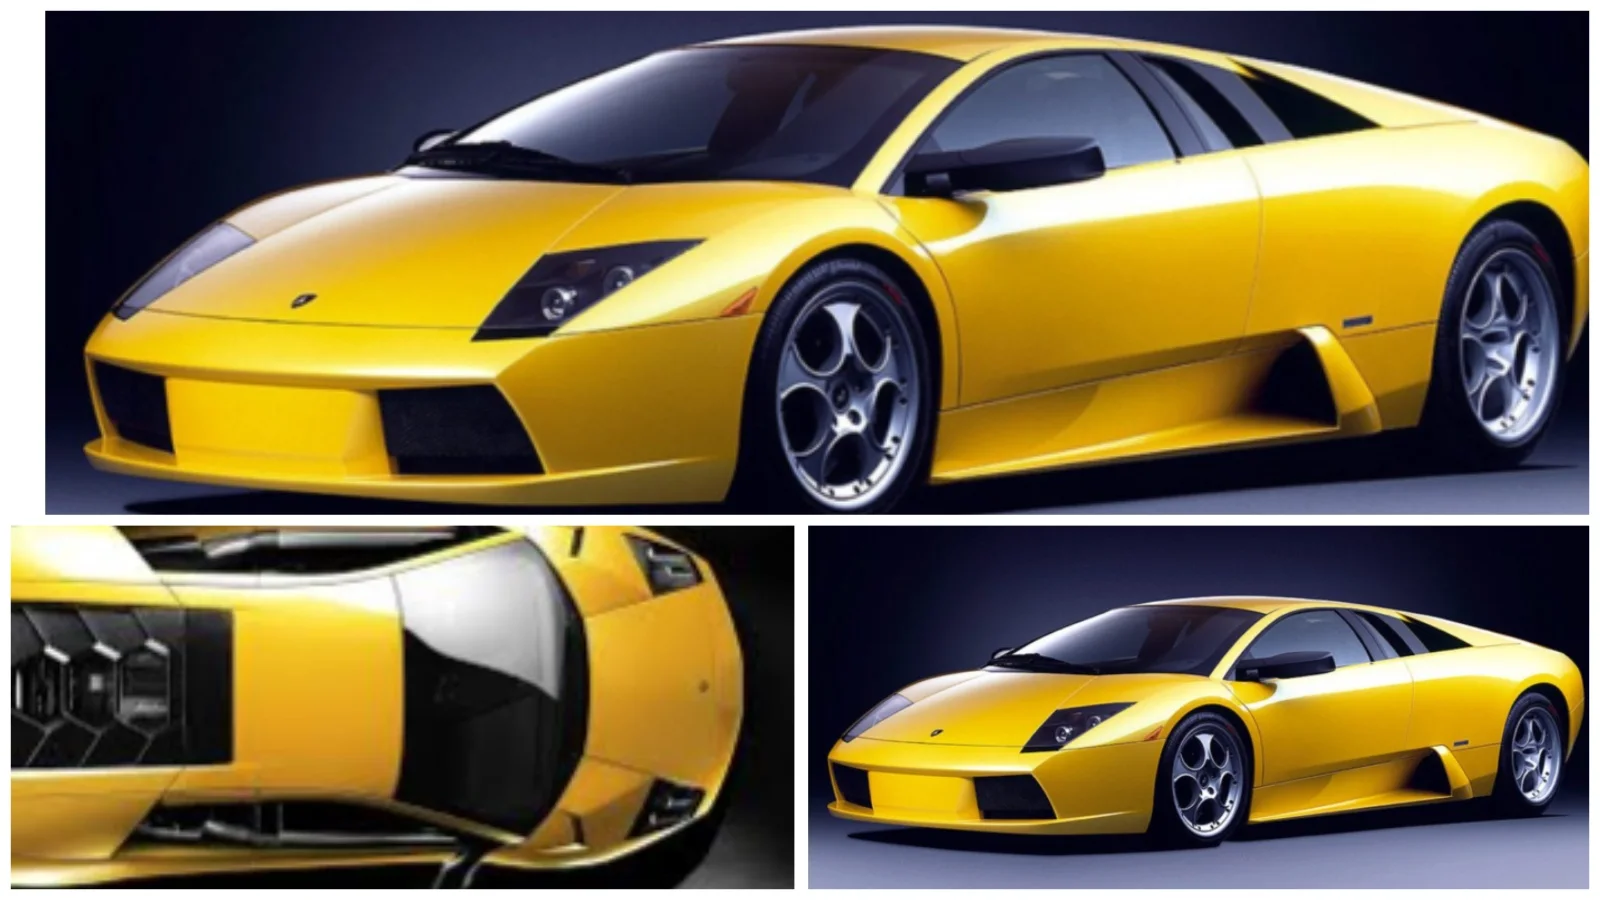 Lamborghini Murcielago On Road Price in India, Mileage, Top Speed, Features, Engine Specifications and Interior Design